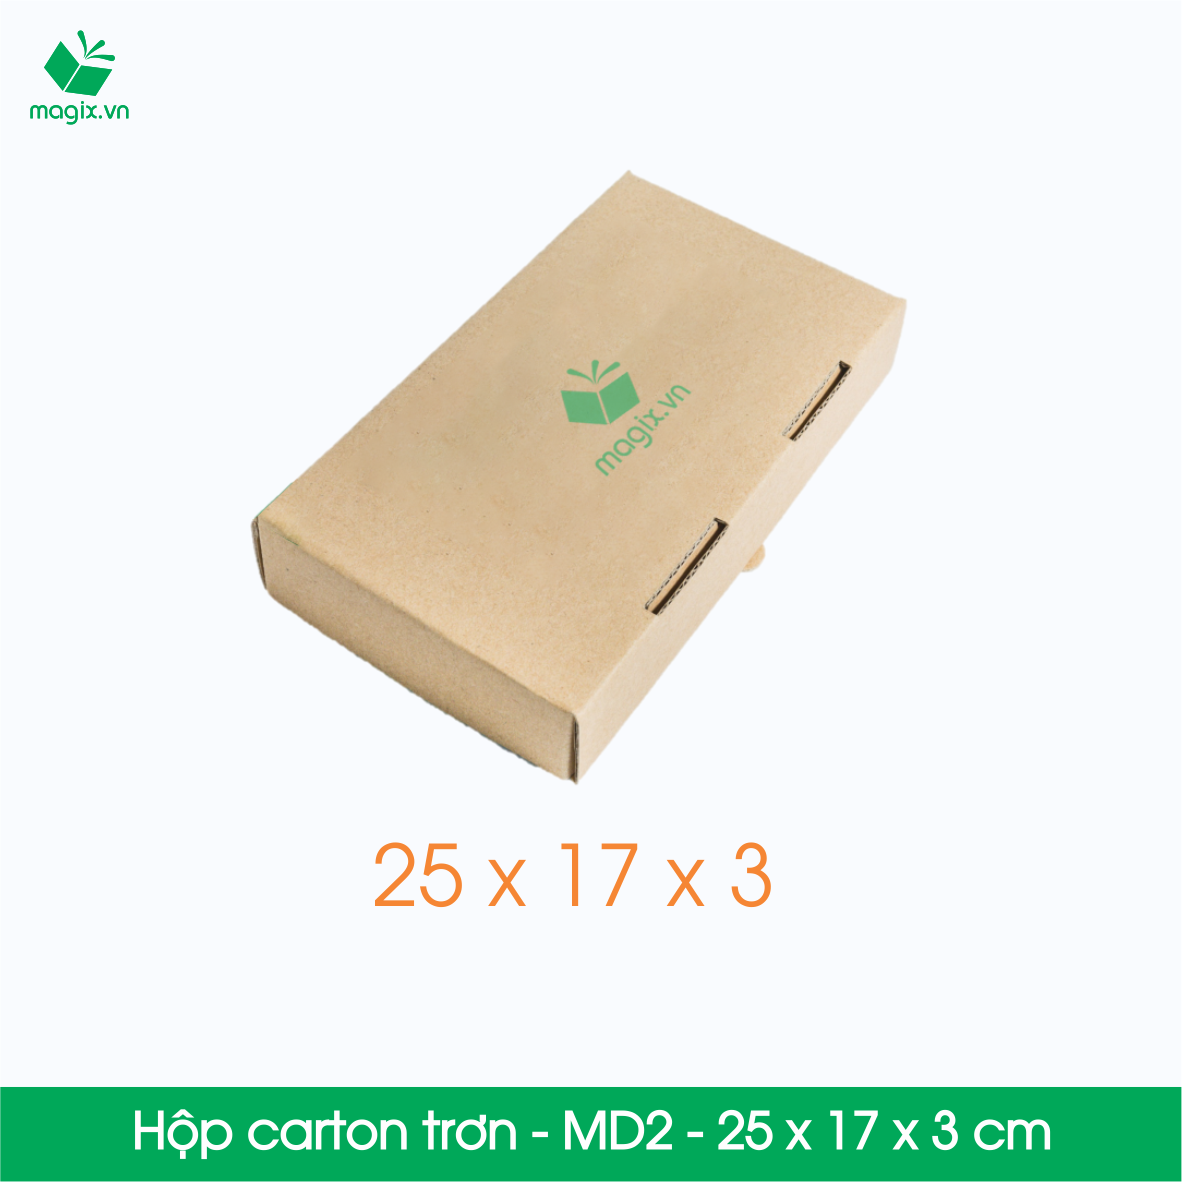 MD2 - 25x17x3 cm - 25 Thùng hộp carton trơn đóng hàng